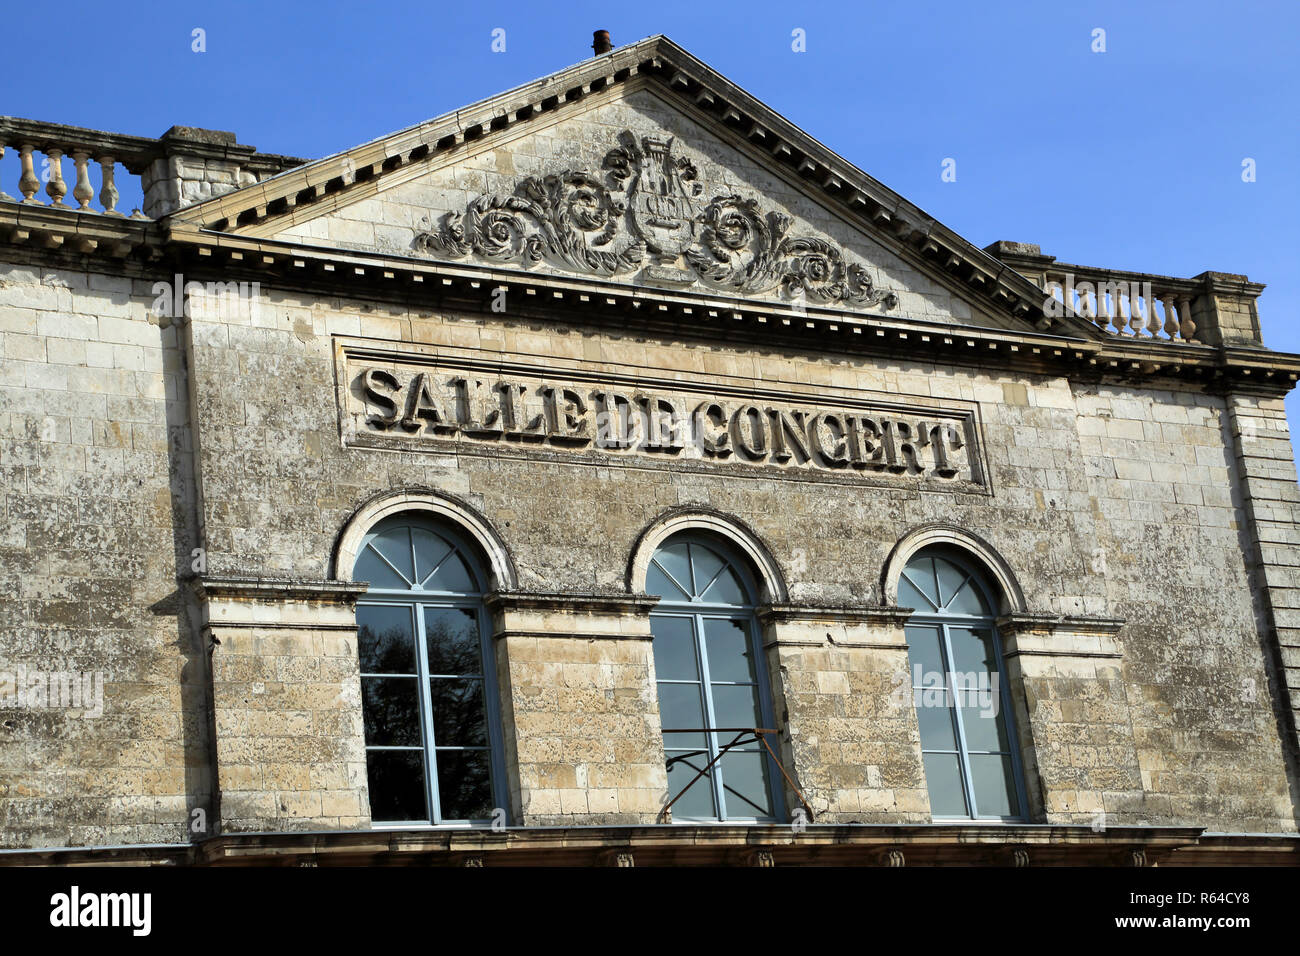 Salle de Concert in Place Saint Jean, Saint Omer, Pas de Calais, Hauts de France, France Stock Photo